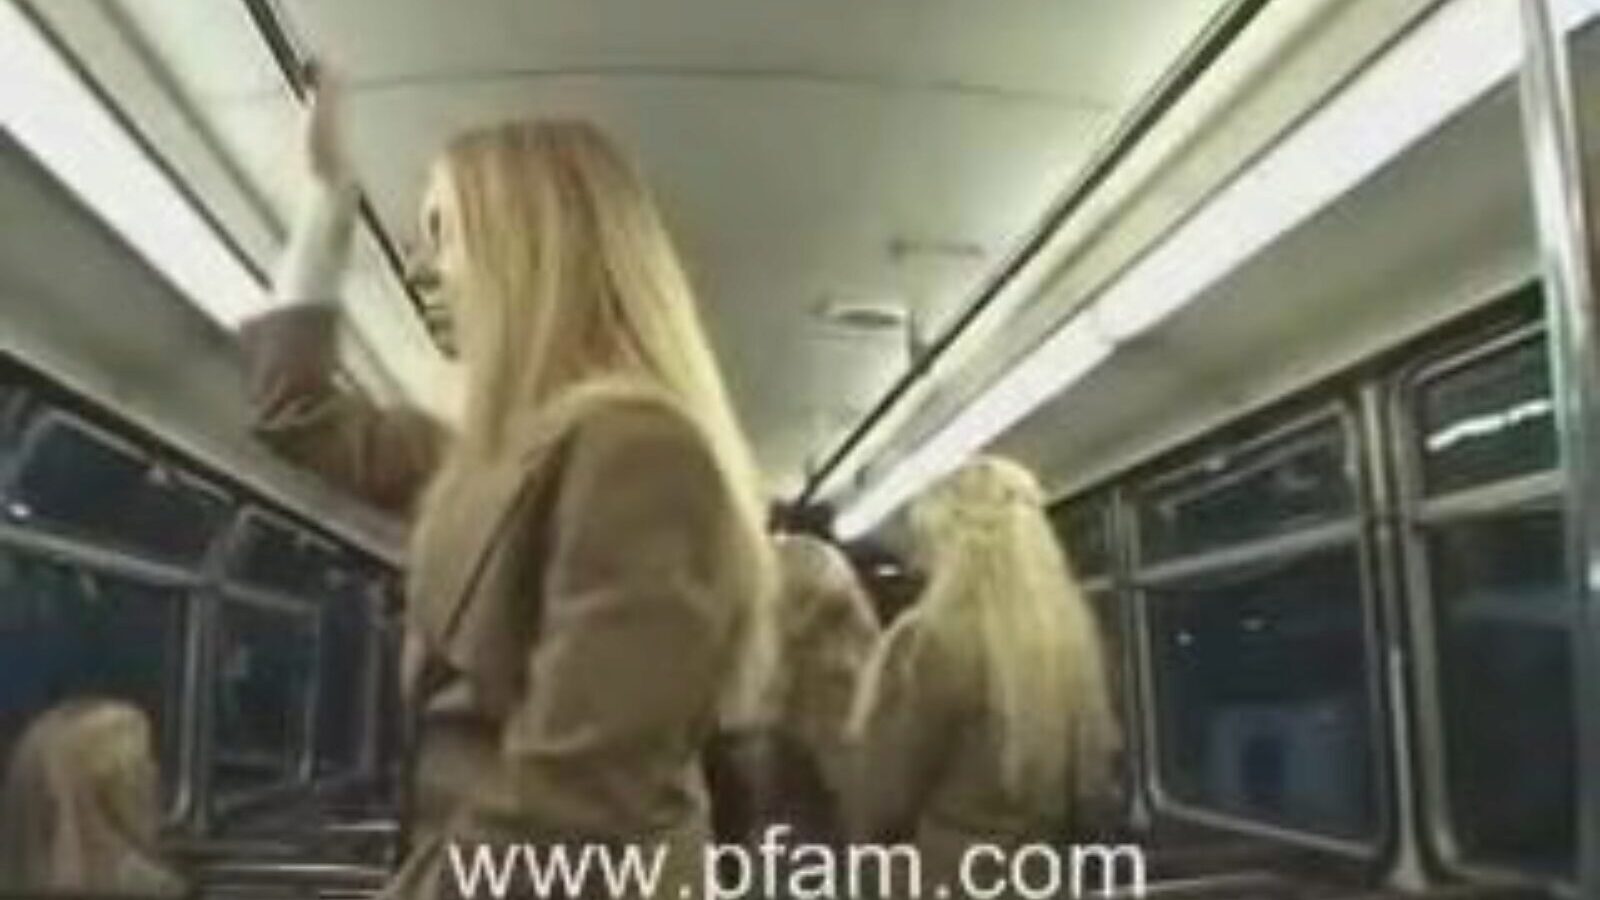 hvid skolepige og asiatisk fyr, den blonde universitetsengel laver mad, der rykker til den japanske fyr i bussen.